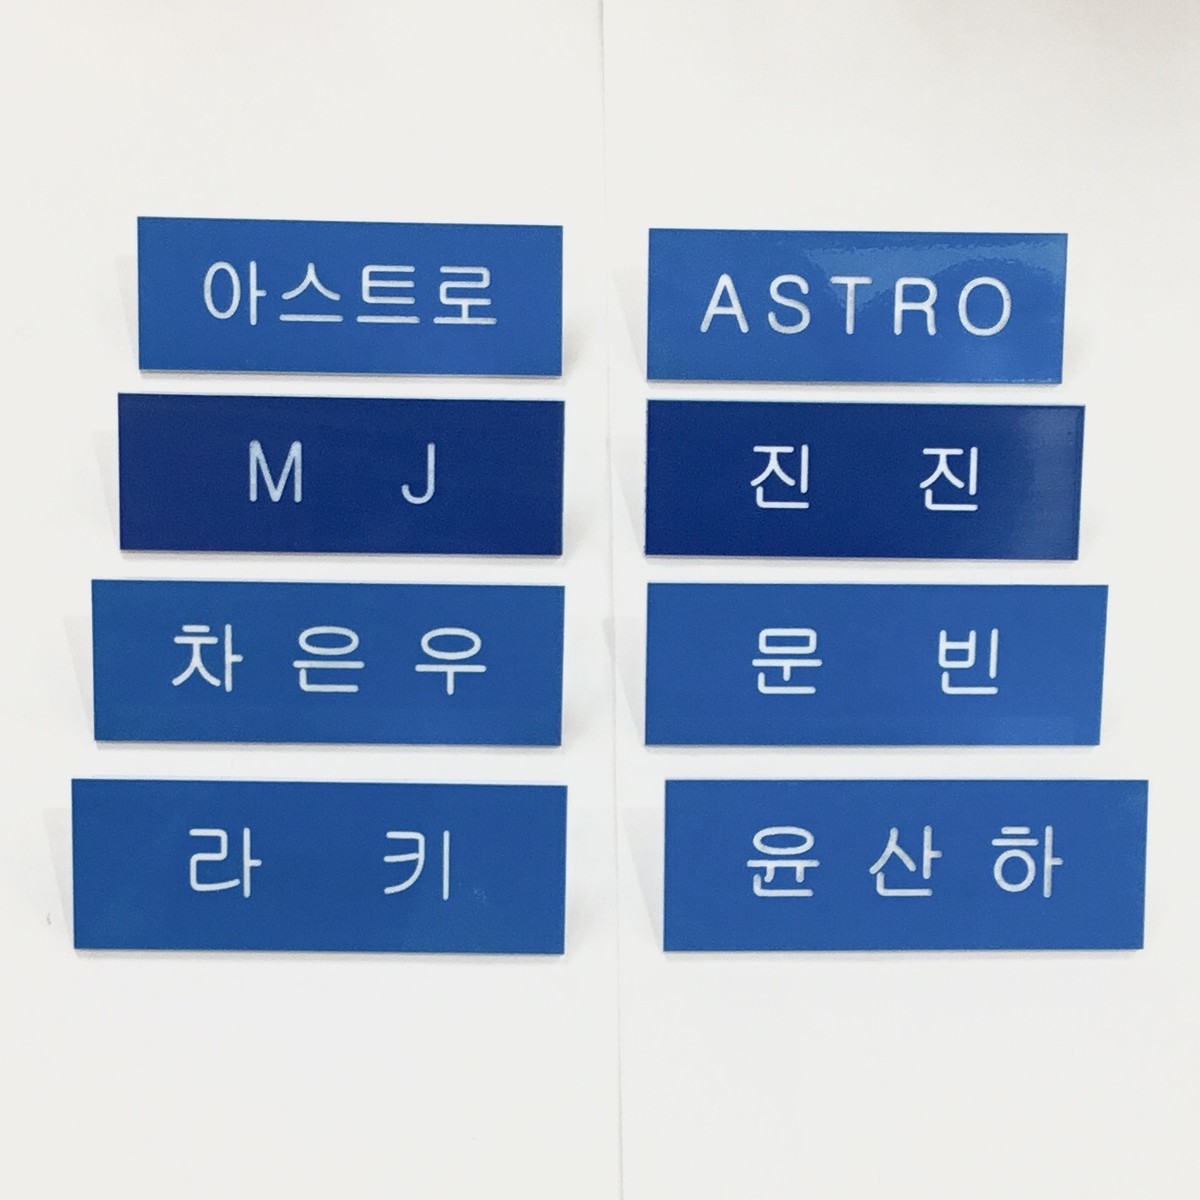 Astro アストロ ネームプレート キラキラ韓流商店